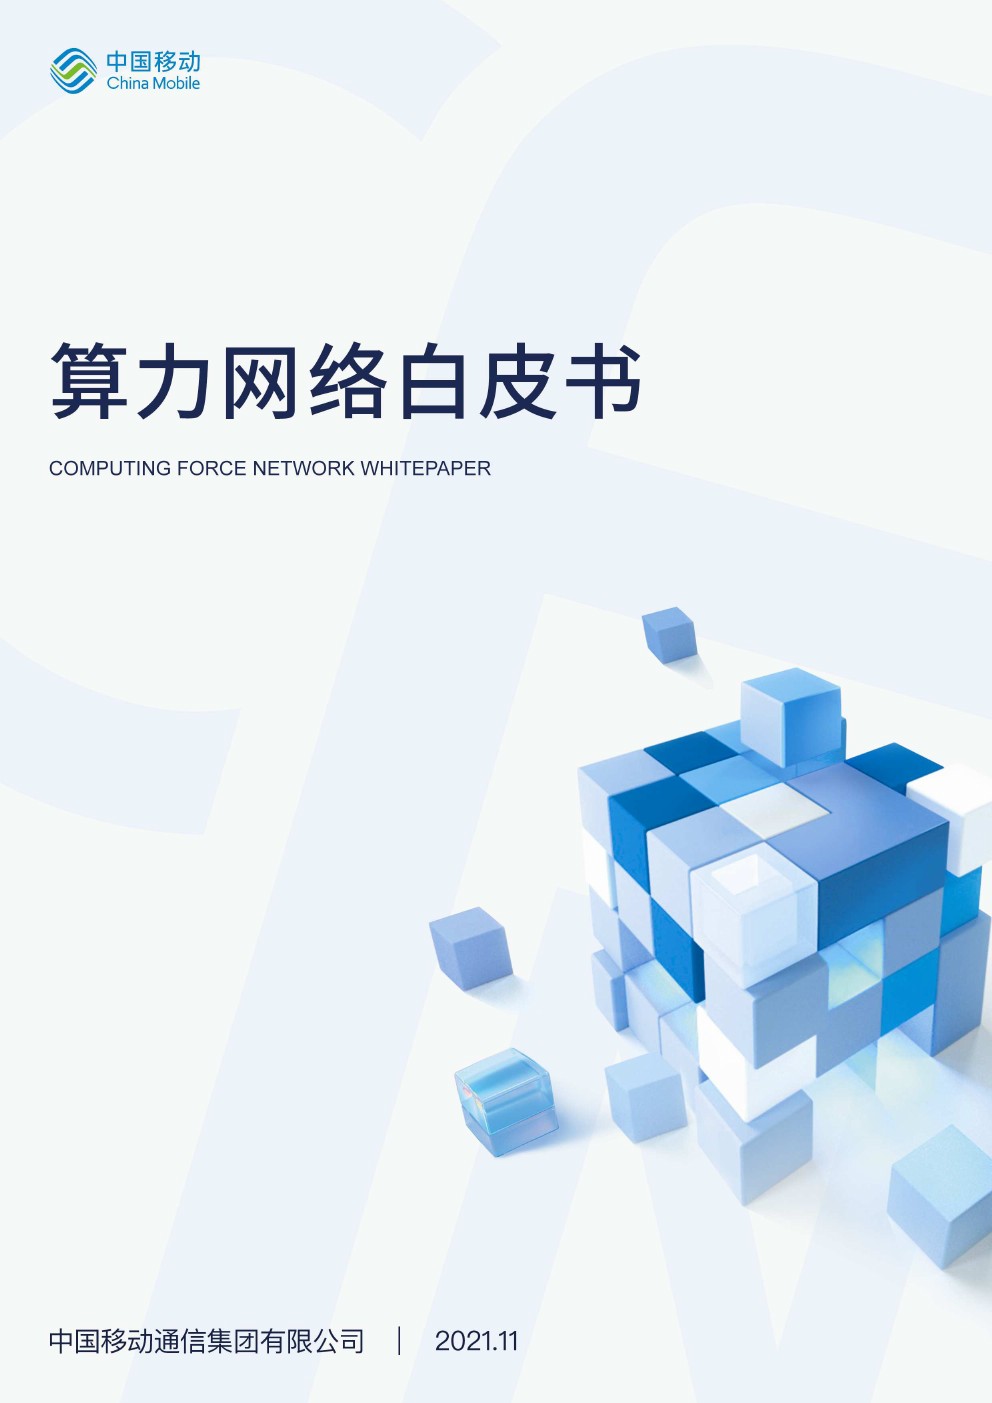 中国移动发布《中国移动算力网络白皮书》